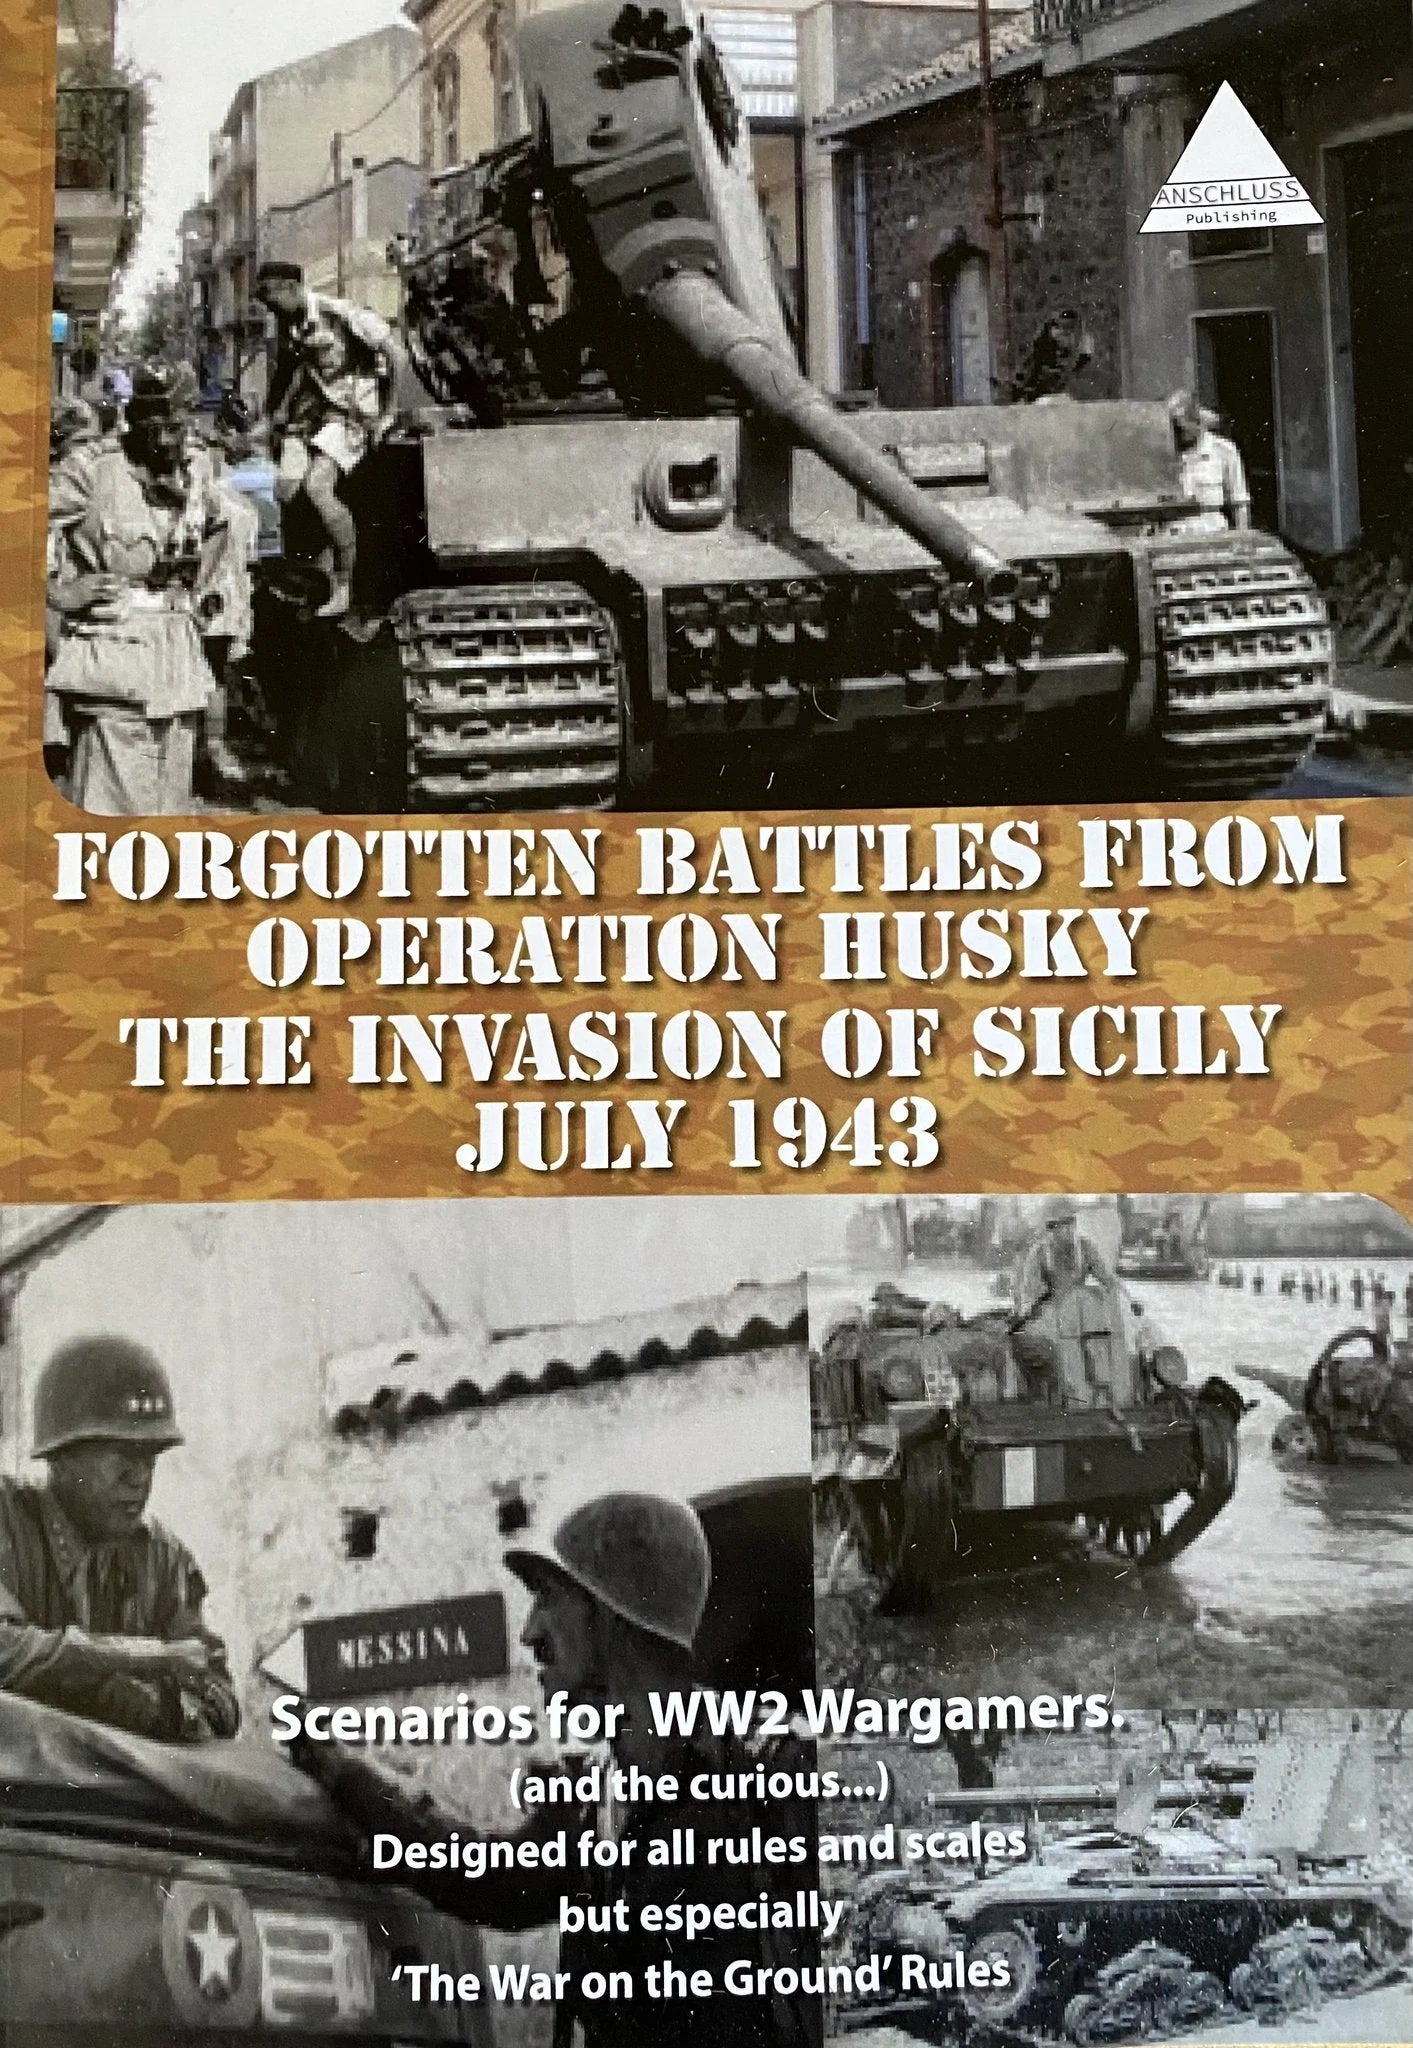 Battles oubliées d'Europe centrale - Sicile